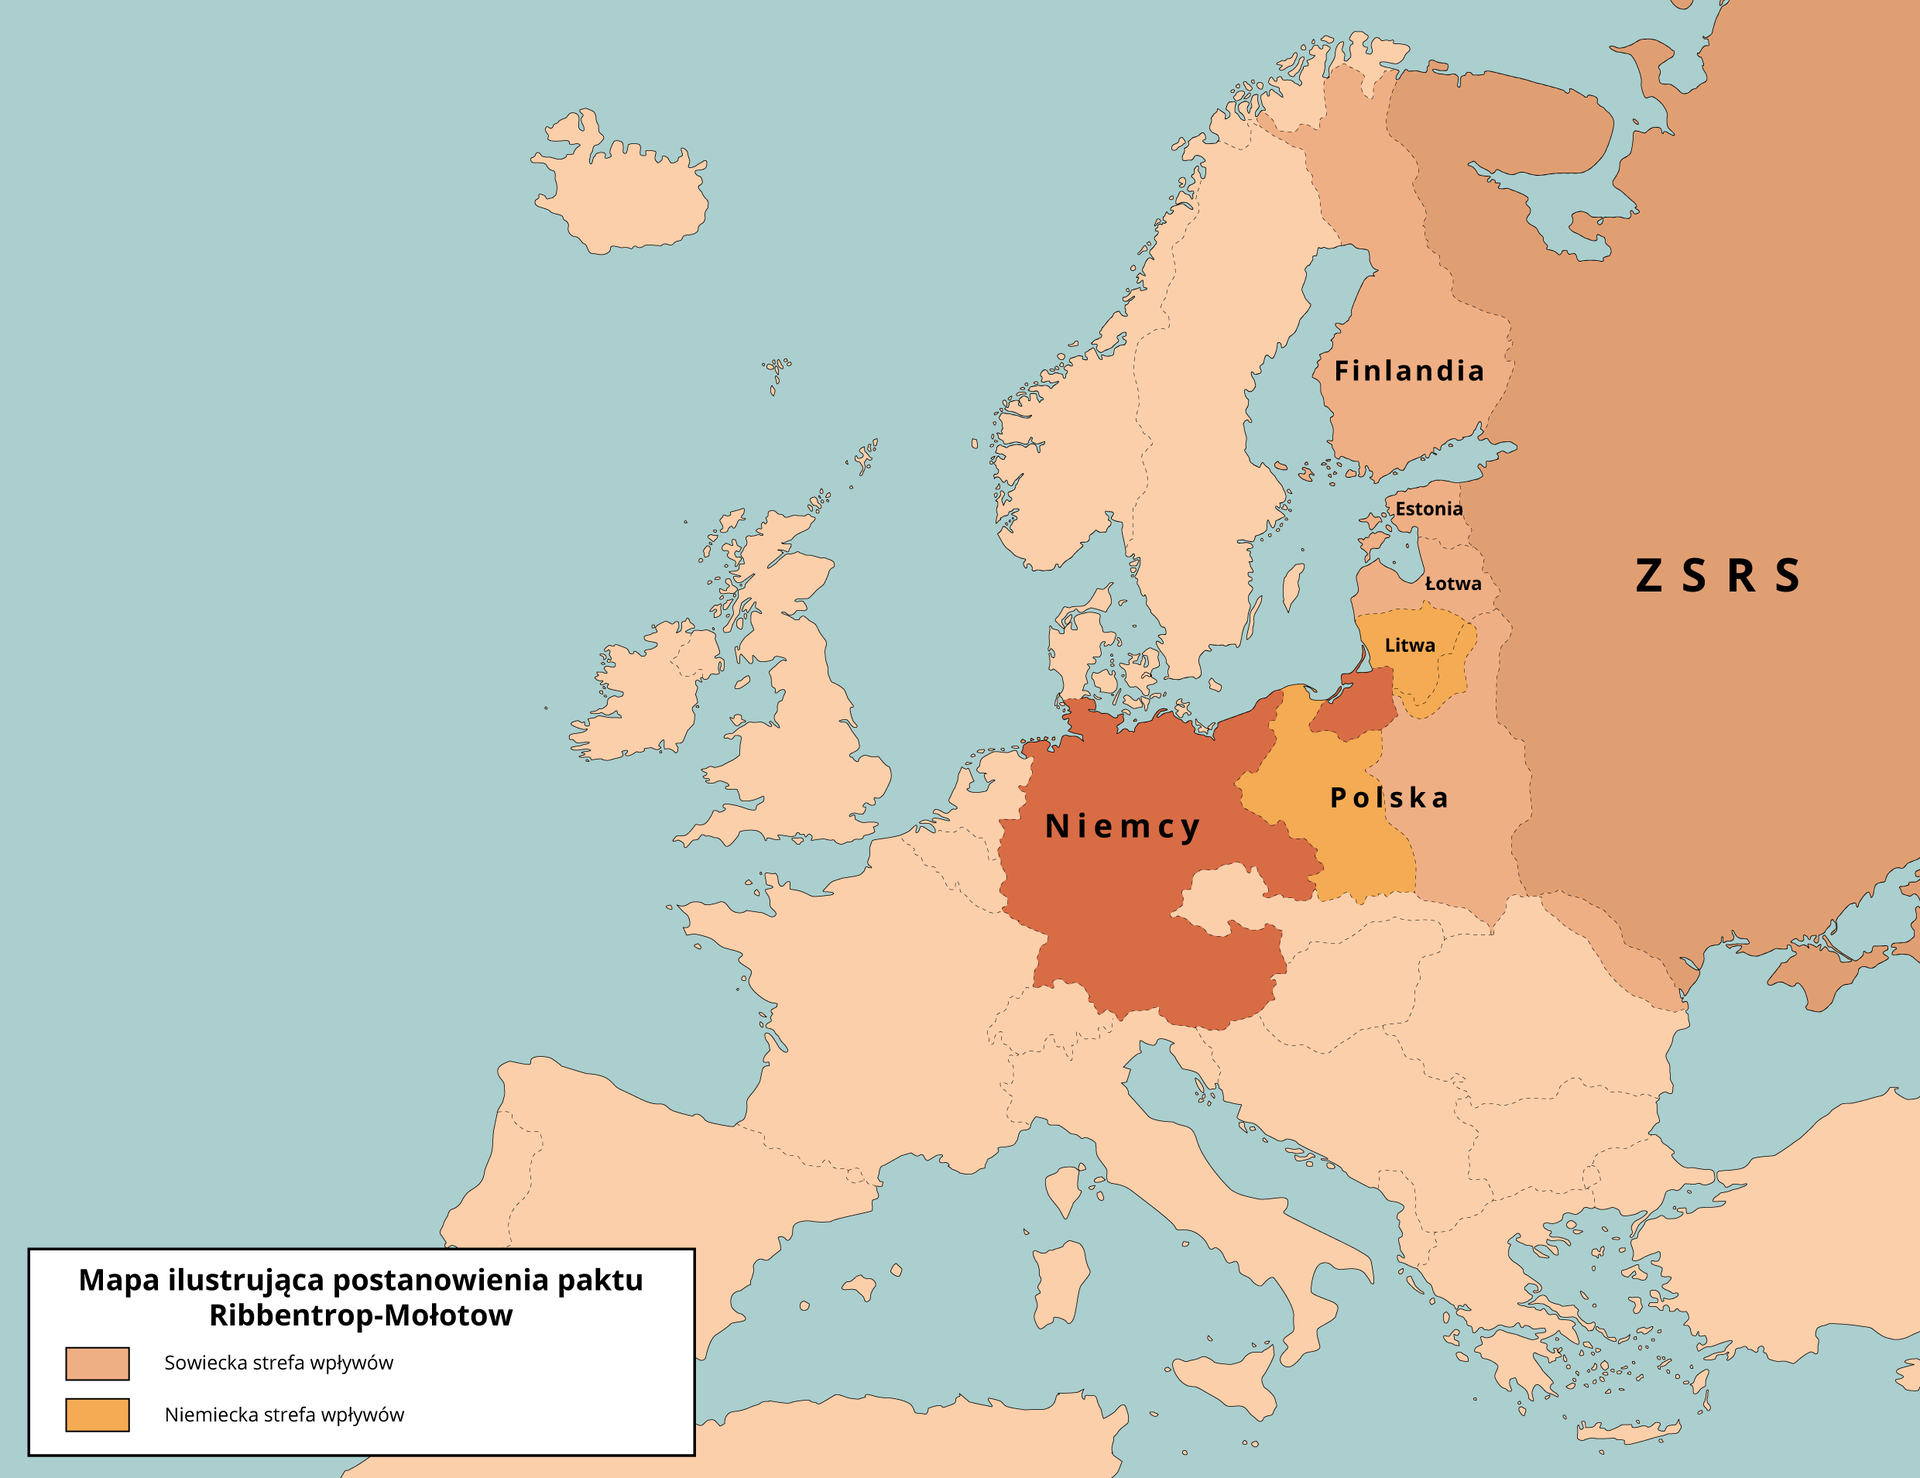 Mapa Europy. Mapa ilustruje postanowienia paktu Ribbentrop-Mołotow. Sowiecka strefa wpływów obejmuje wschodnią część Polski, Łotwę, Estonię i Finlandię. Niemiecka strefa wpływów obejmuje zachodnią część Polski oraz Litwę.